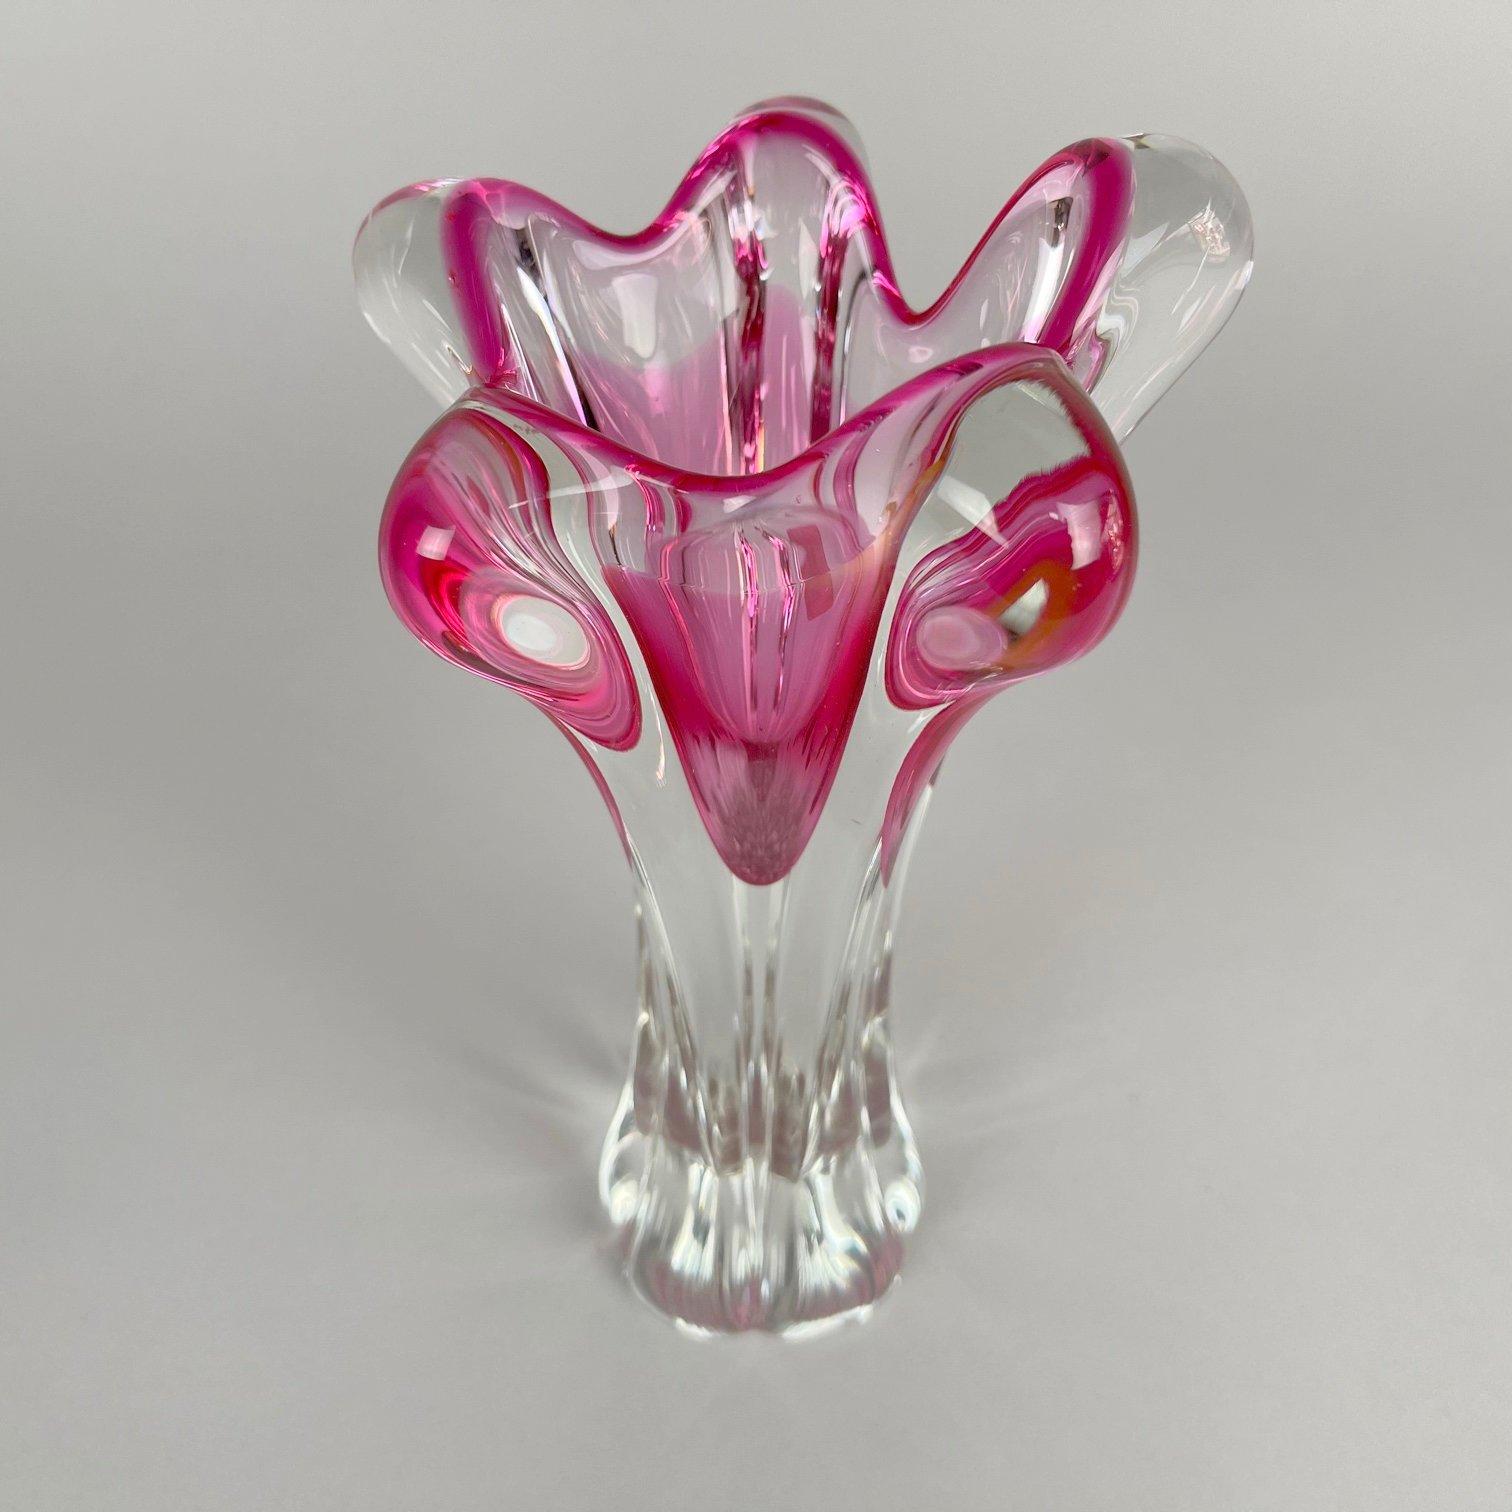 Vase en verre d'art conçu par Josef Hospodka en Tchécoslovaquie et produit par Chribska Glassworks dans les années 1960. Le vase porte l'étiquette originale de la verrerie Chribská.